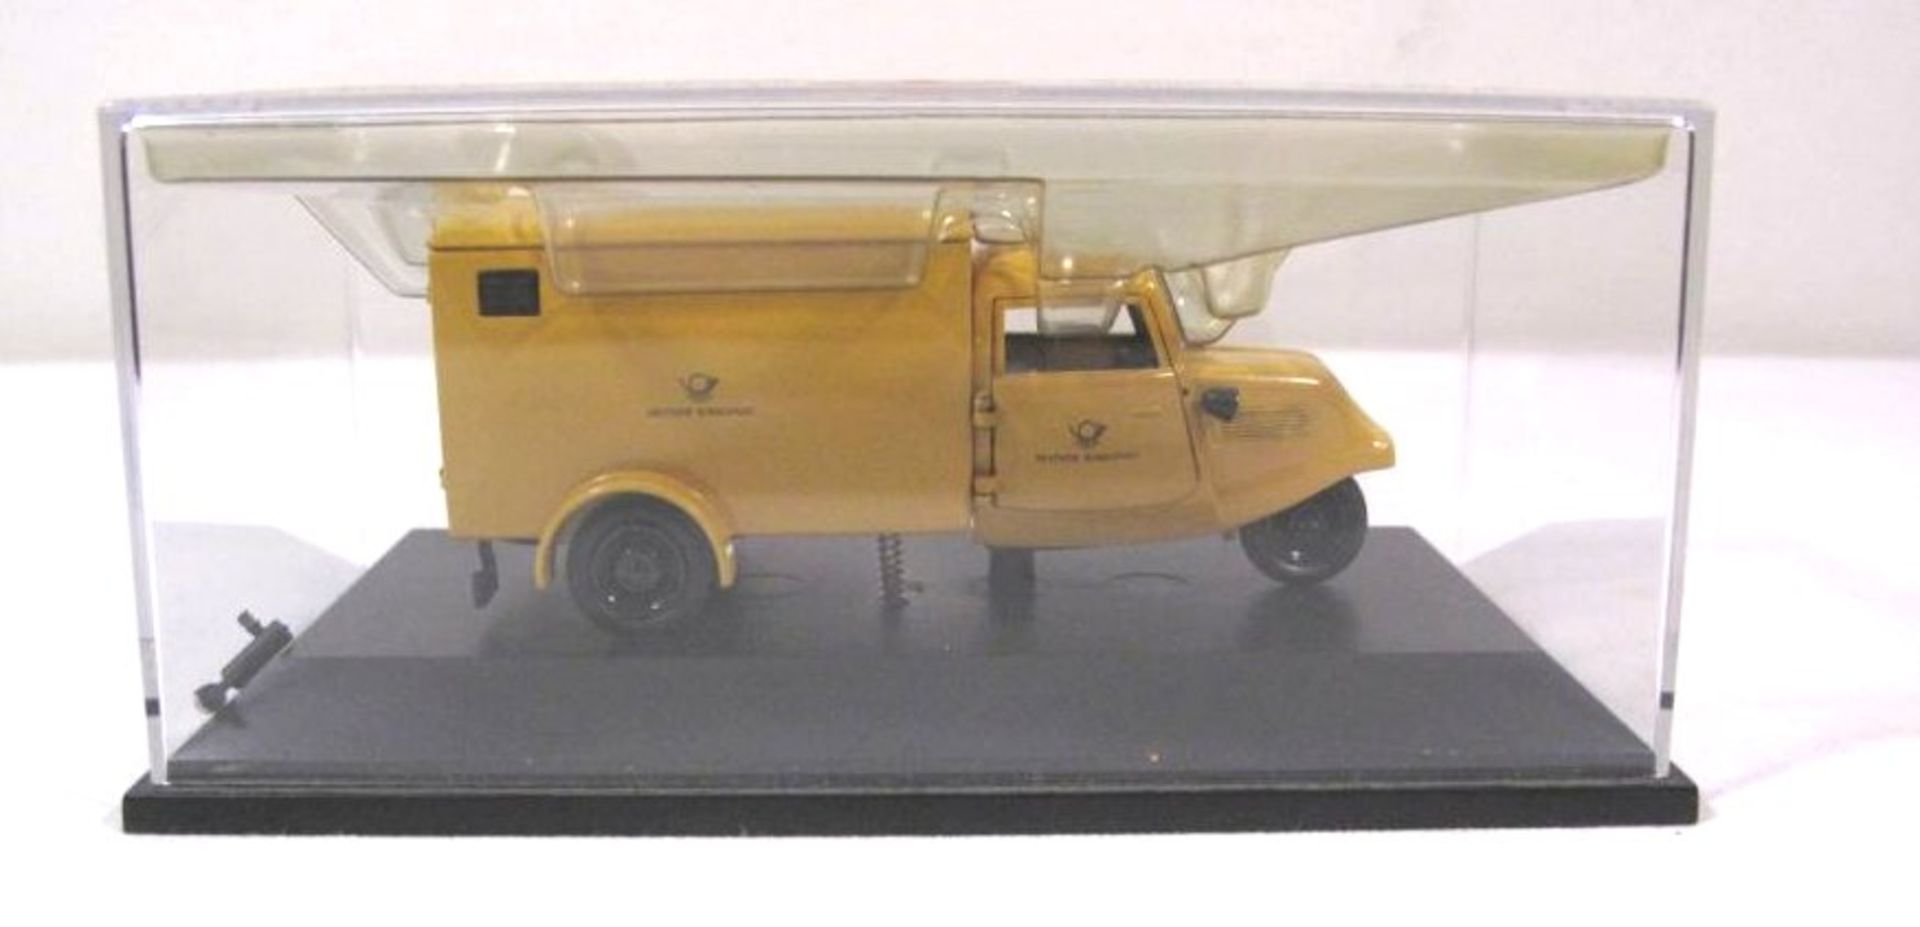 Schuco-Modell in Display "Threewheeler Box Van ", kl. Teil lose in Display. - Bild 4 aus 4